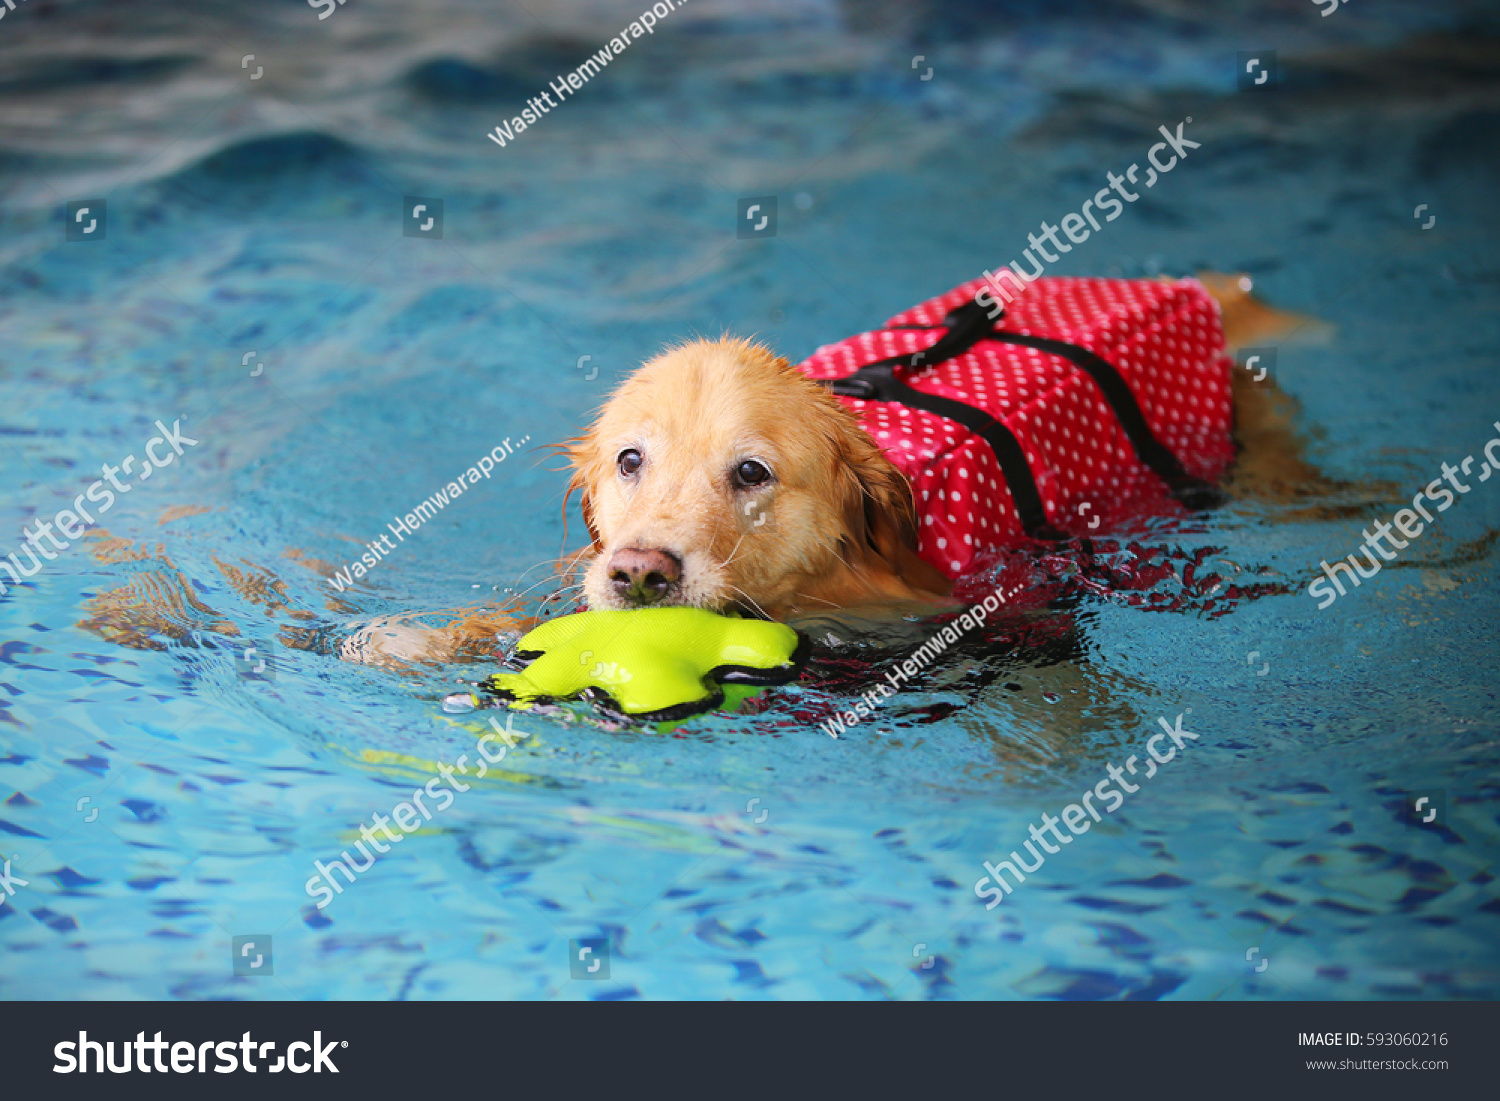 Dog swimming, Golden Retriever, dog wet #593060216